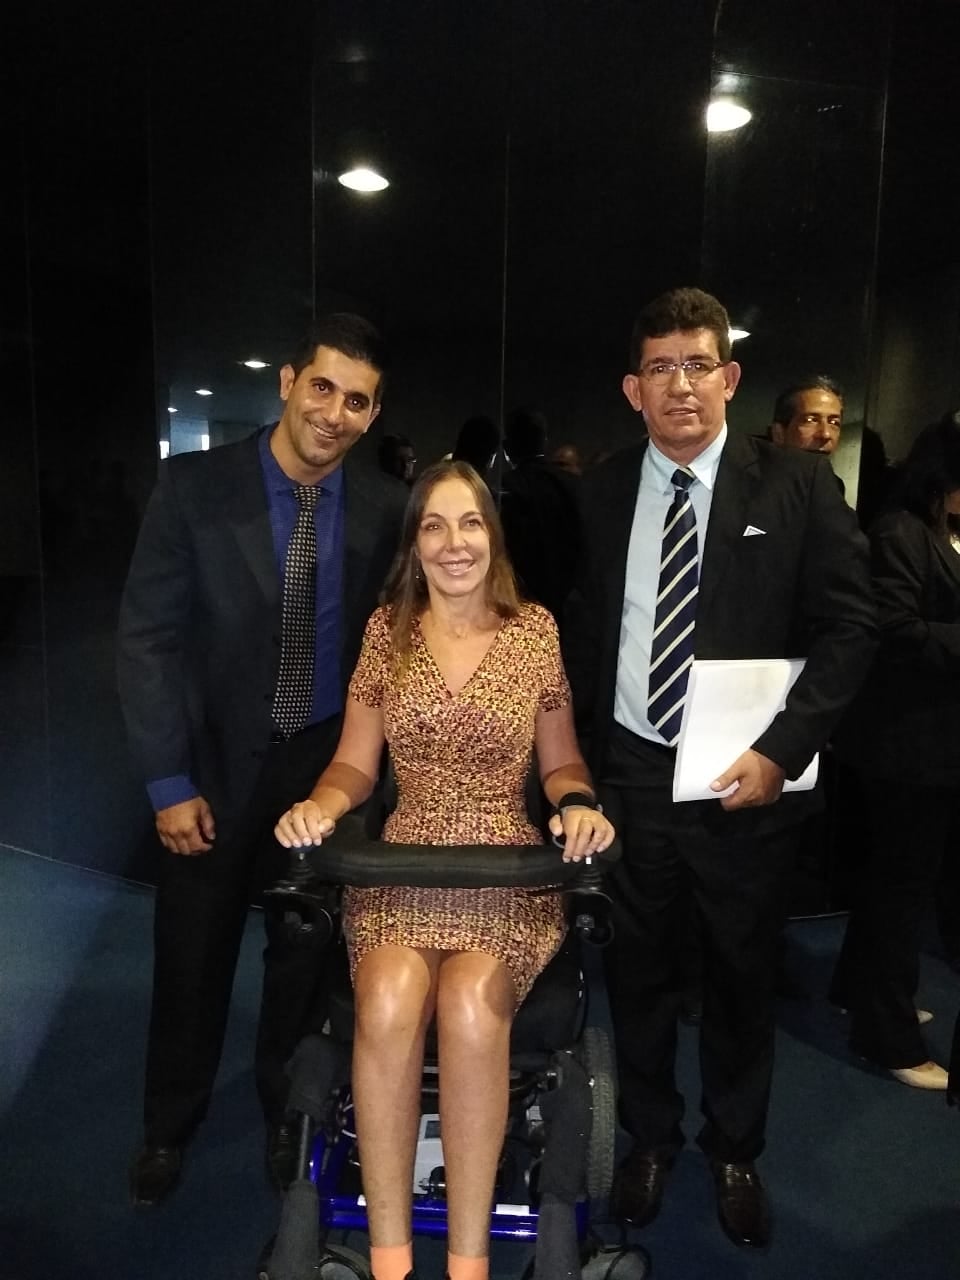 Administração busca soluções para fortalecer os direitos dos deficientes - Prefeitura Municipal de Nova Aliança-SP